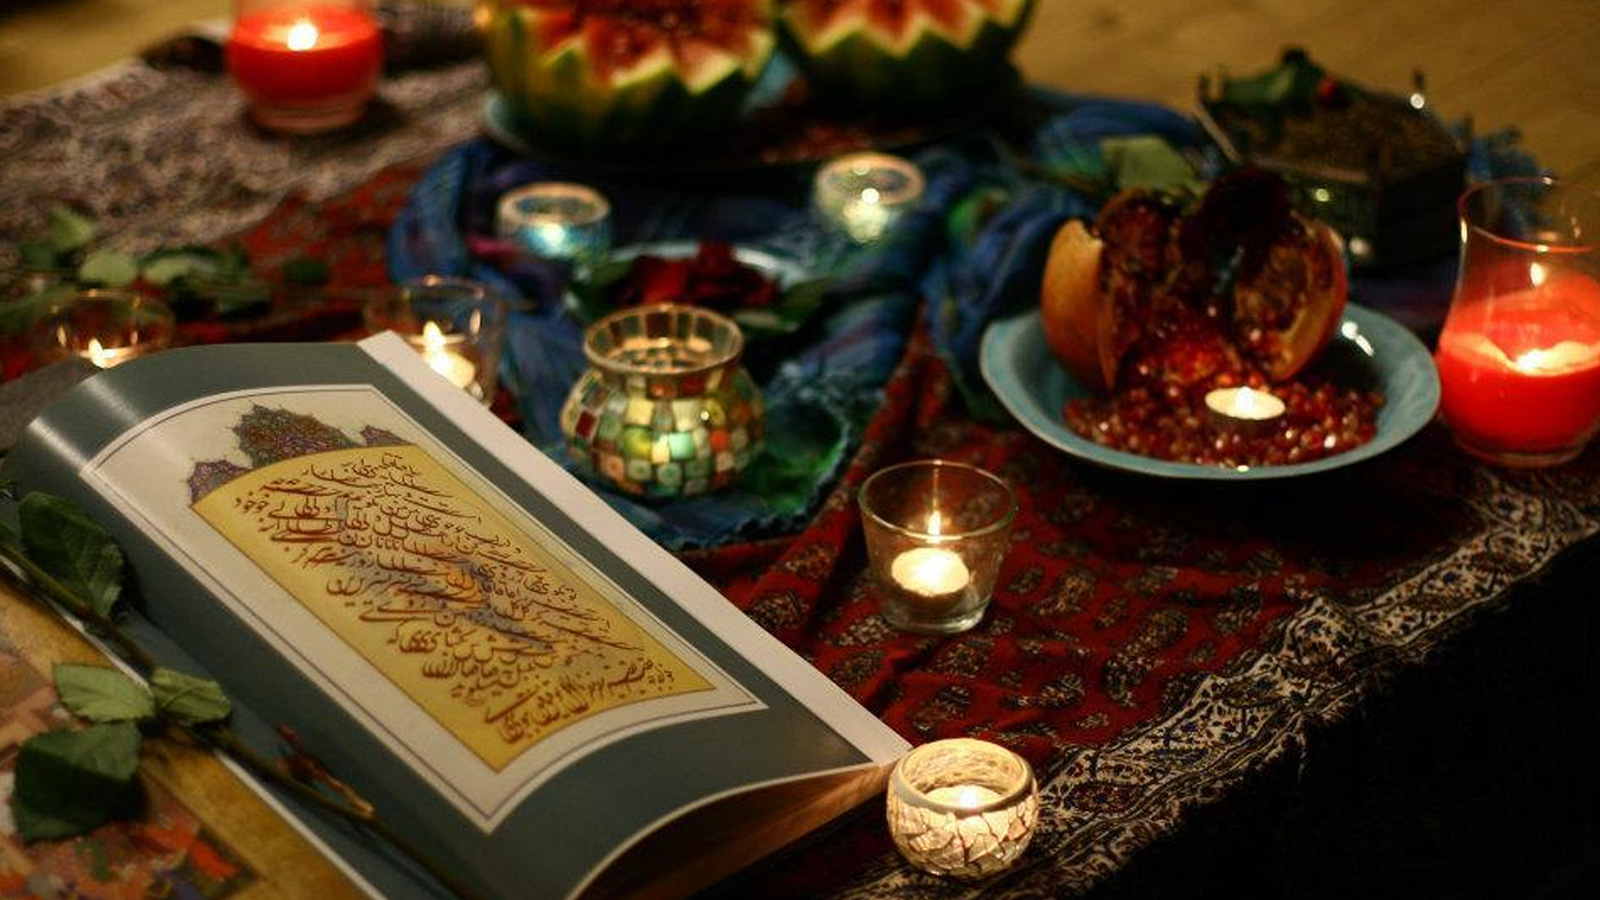 ‪احتفال يلدا.. كتب وفلكور‬ (الصحافة الإيرانية)